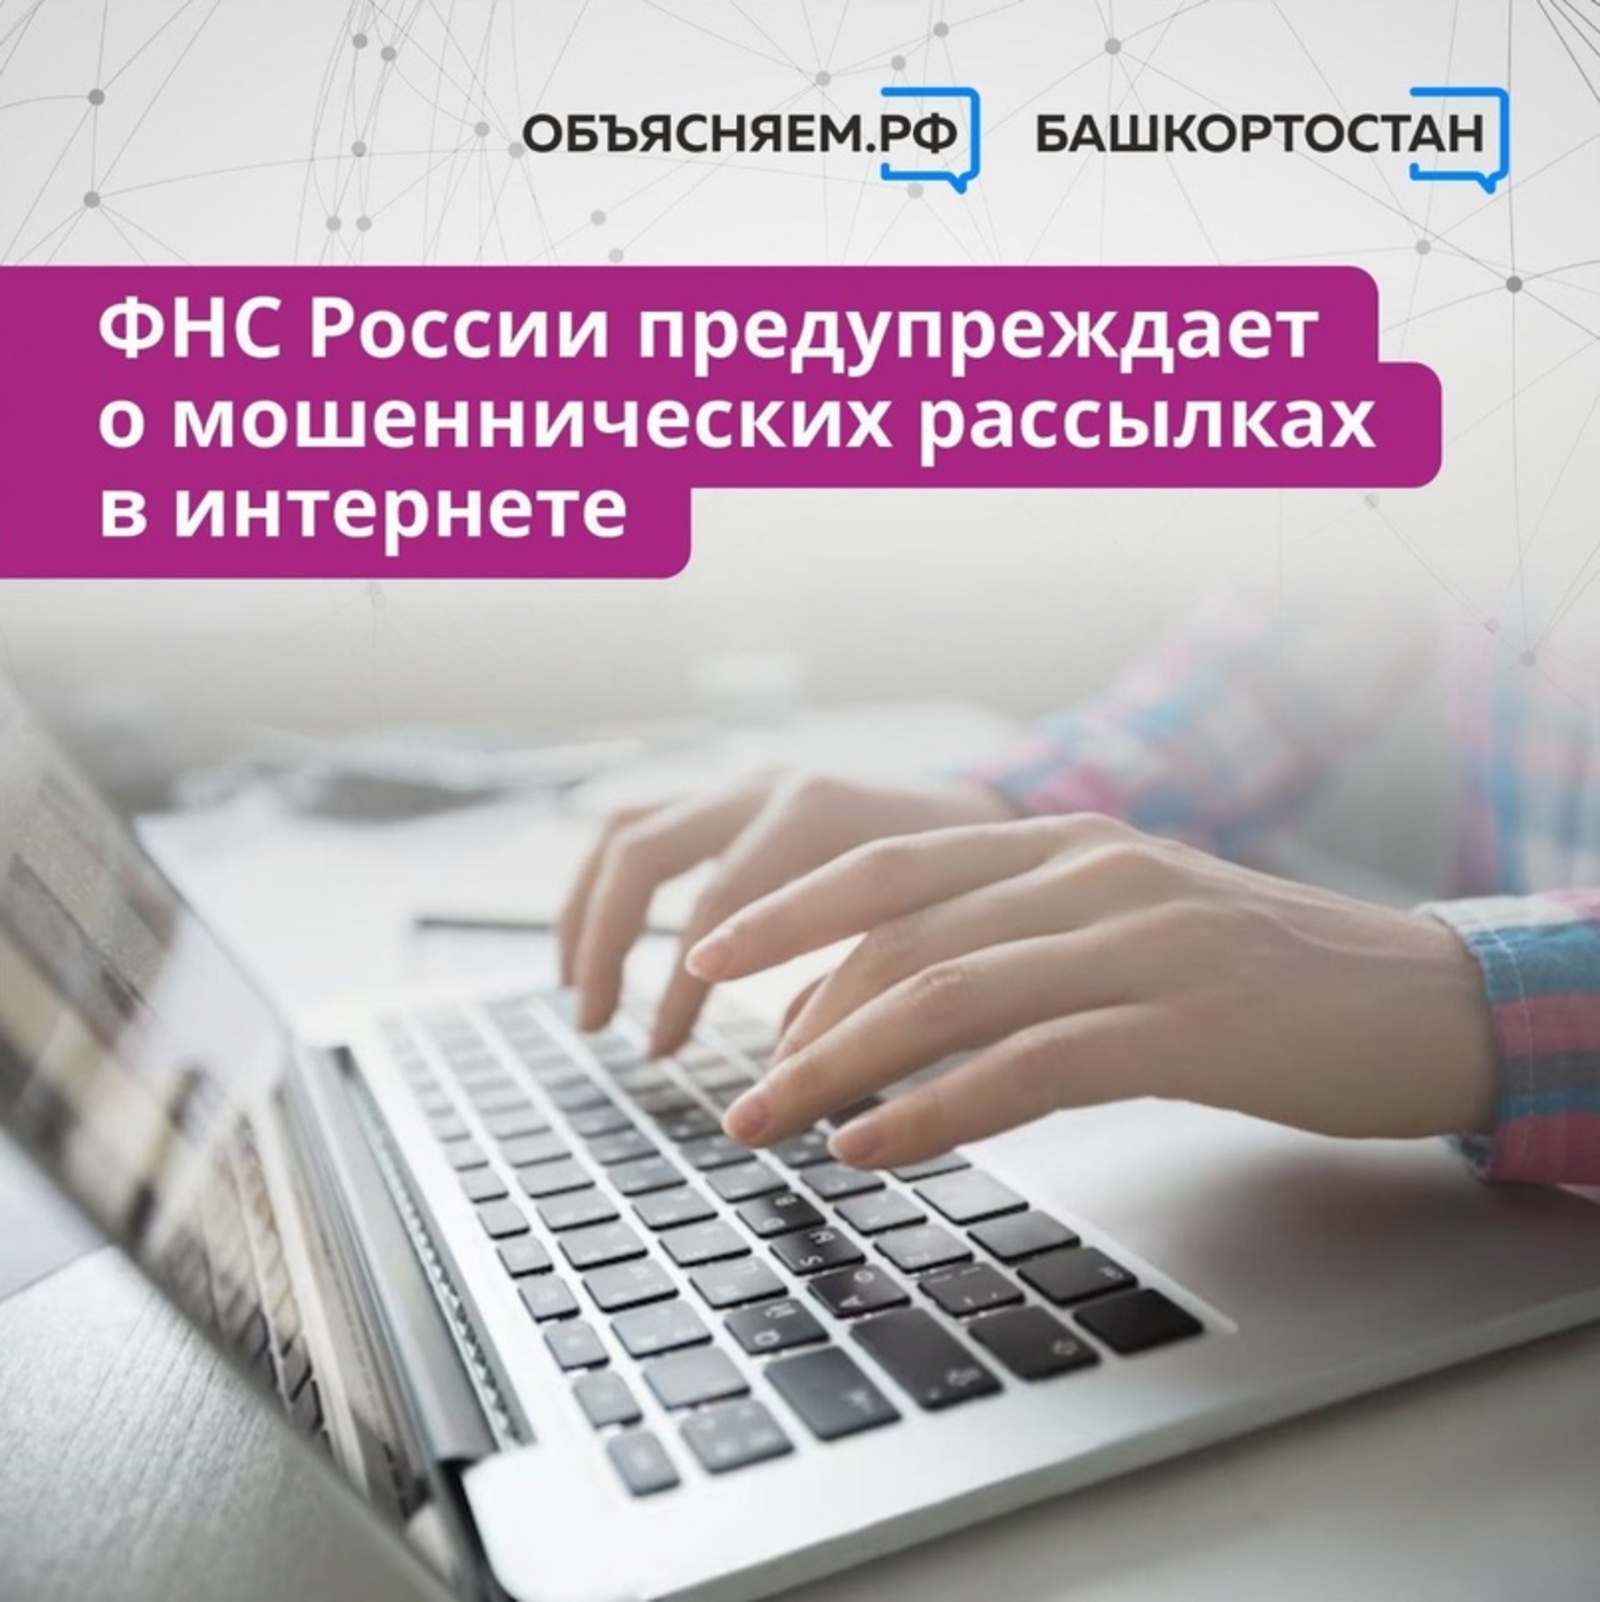 ФНС России предупреждает о мошеннических рассылках в интернете от лица налоговой службы.